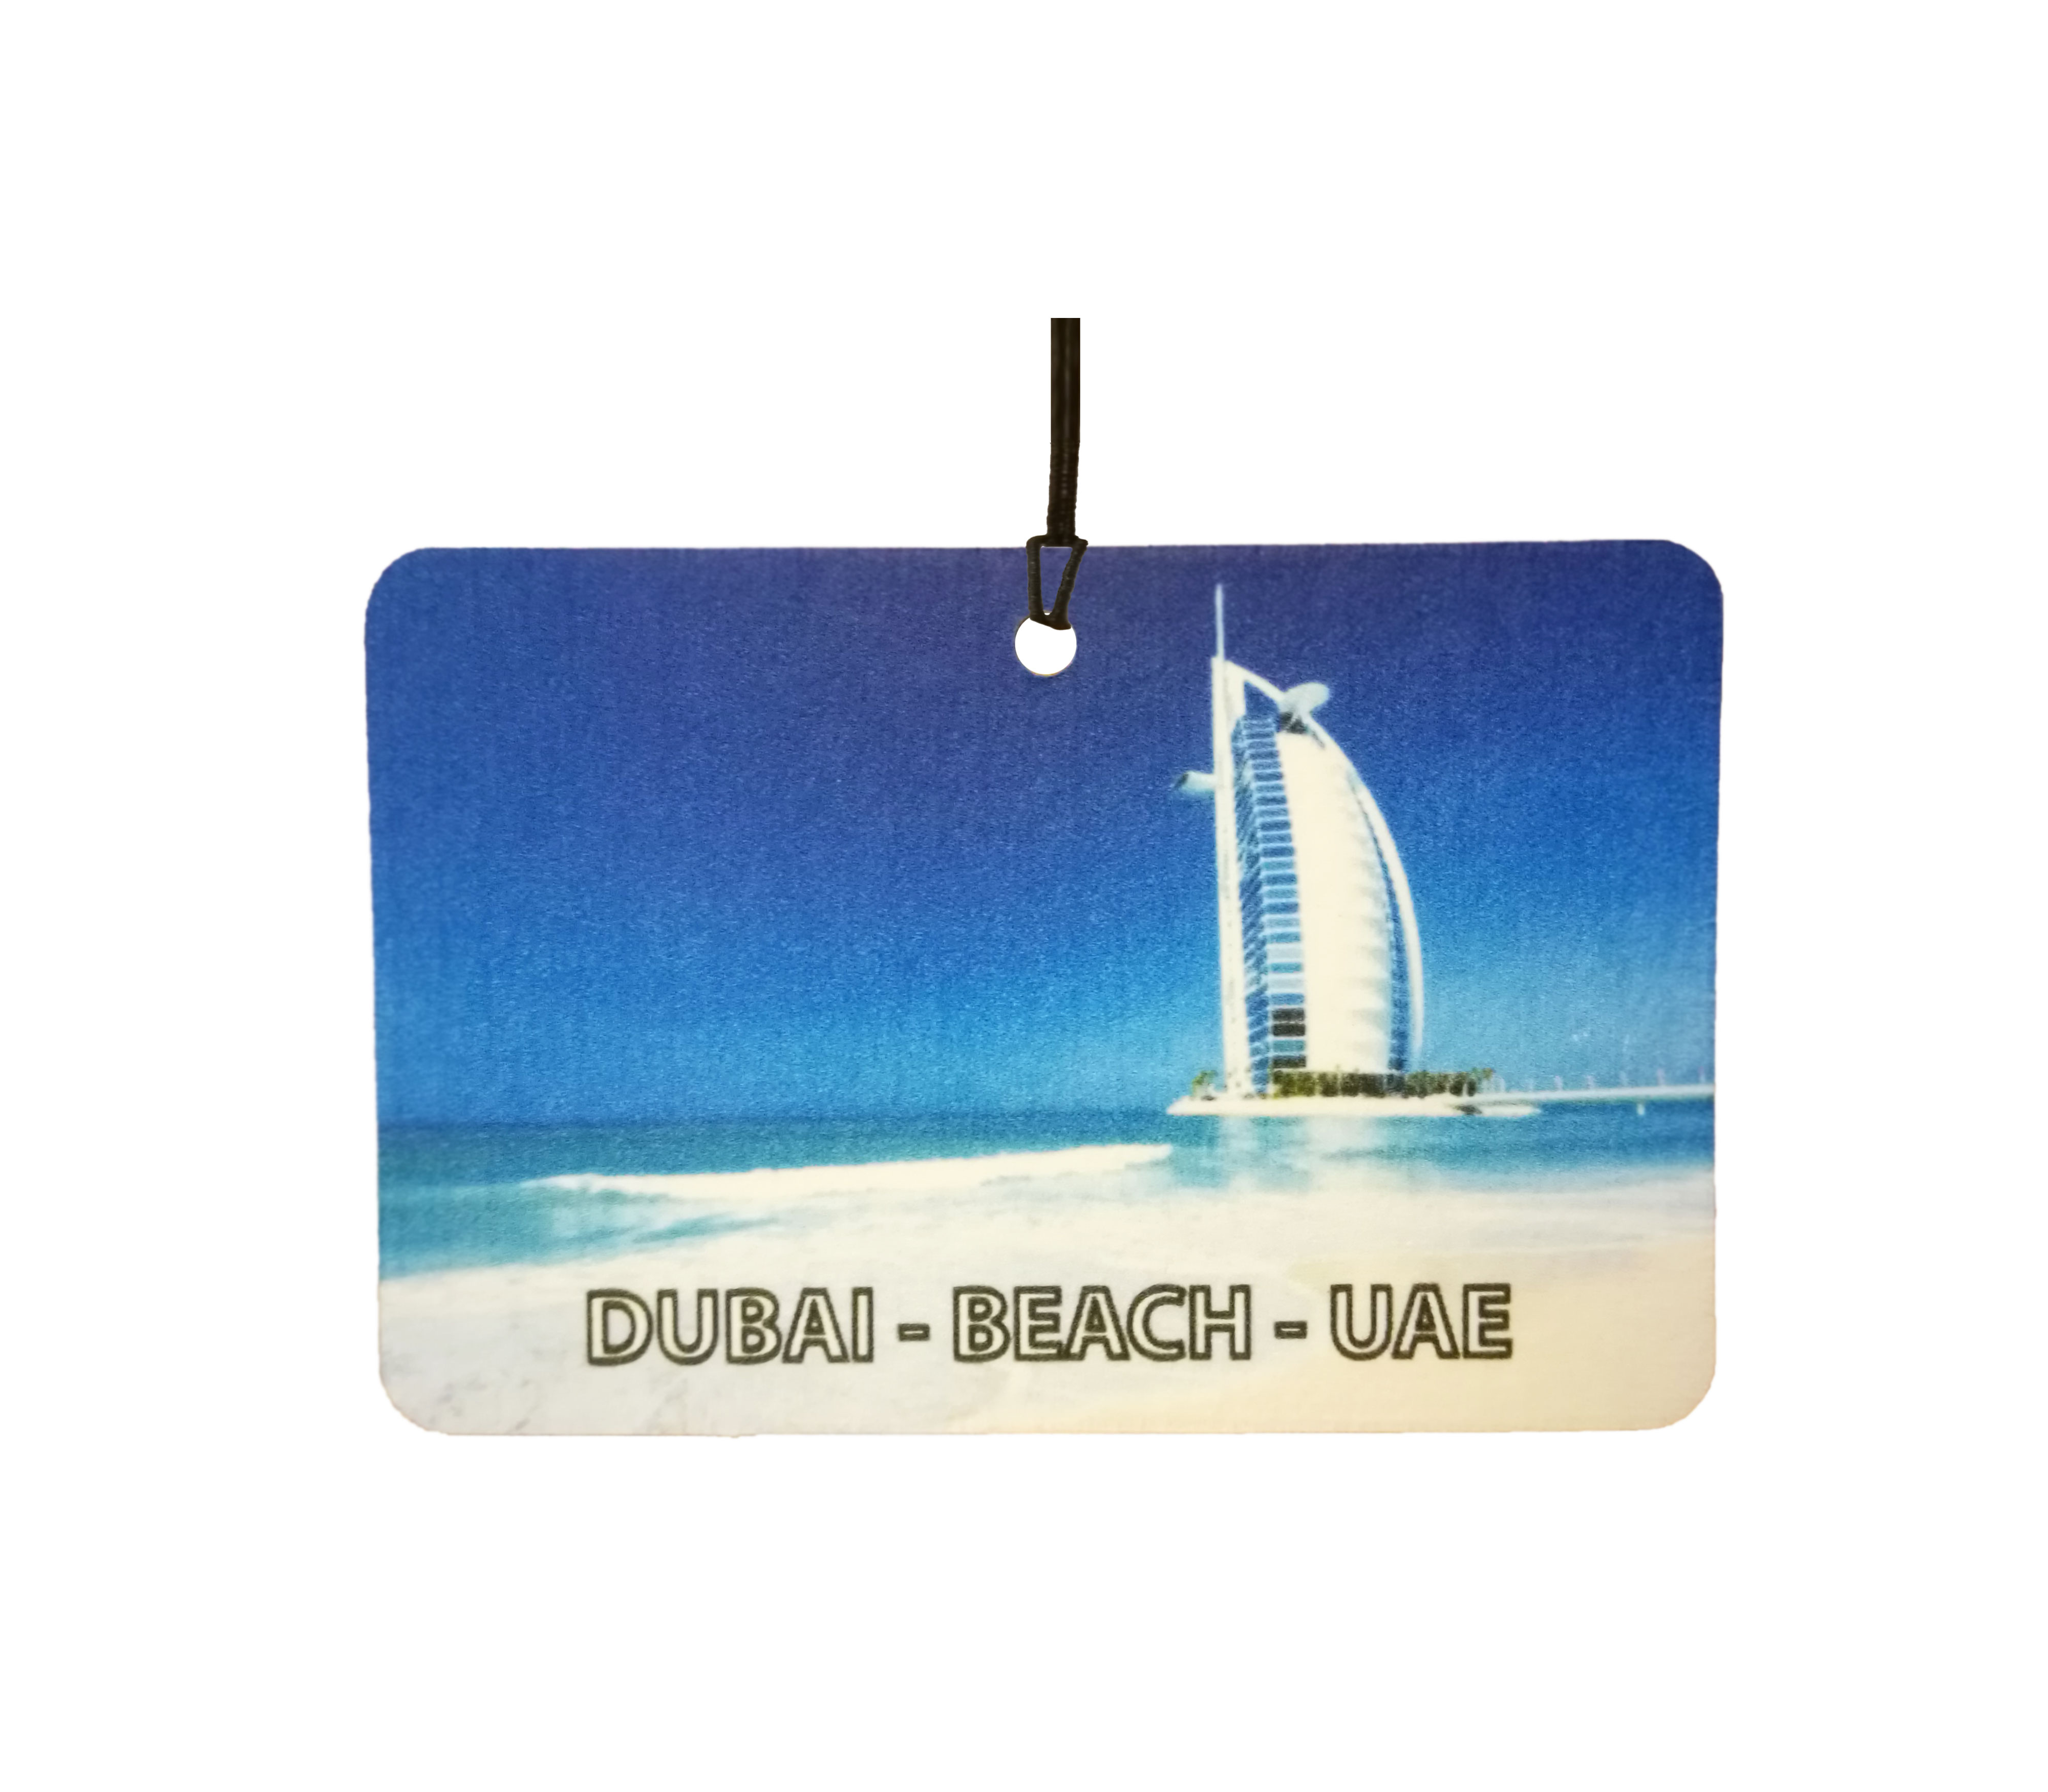 Dubai - Beach - UAE